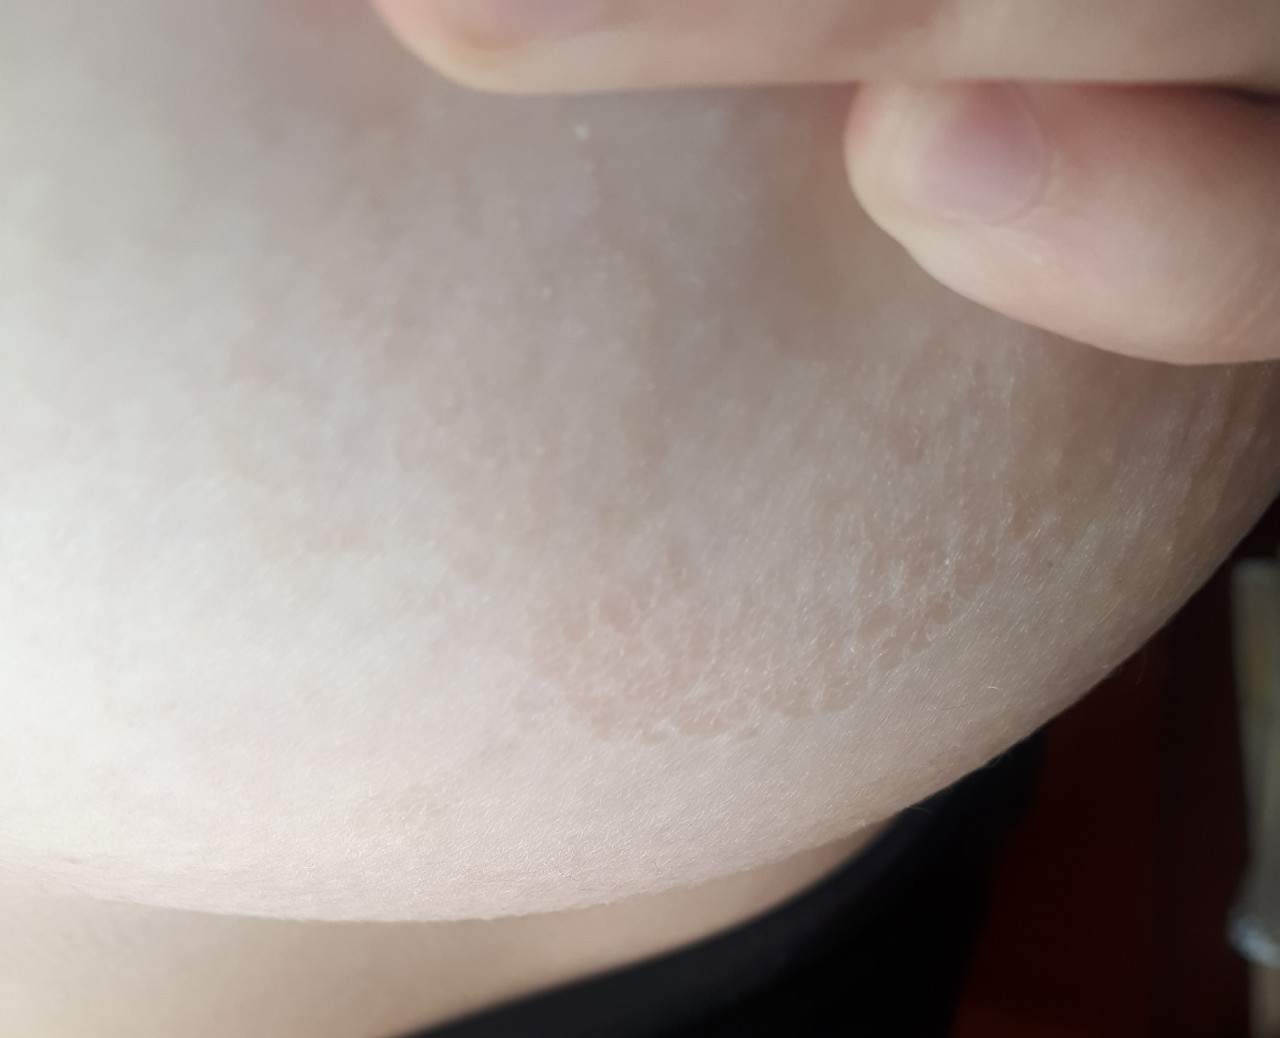 шелушится кожа на груди во время беременности фото 8